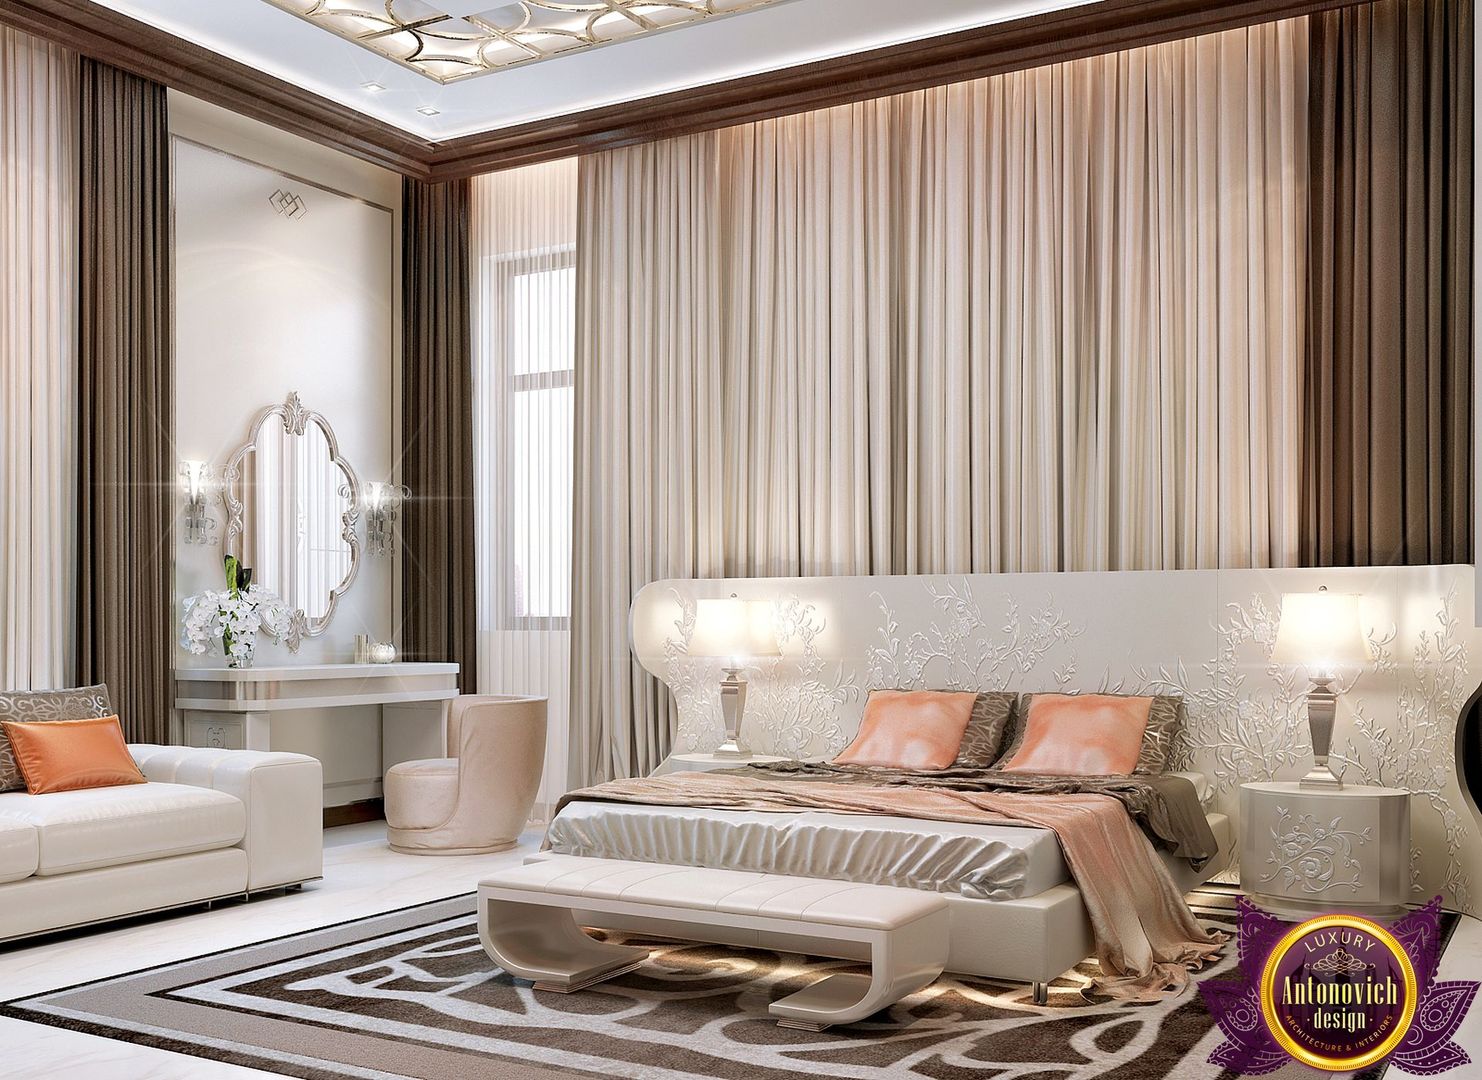 Interior Design bedroom by Katrina Antonovich, Luxury Antonovich Design Luxury Antonovich Design Bedroom